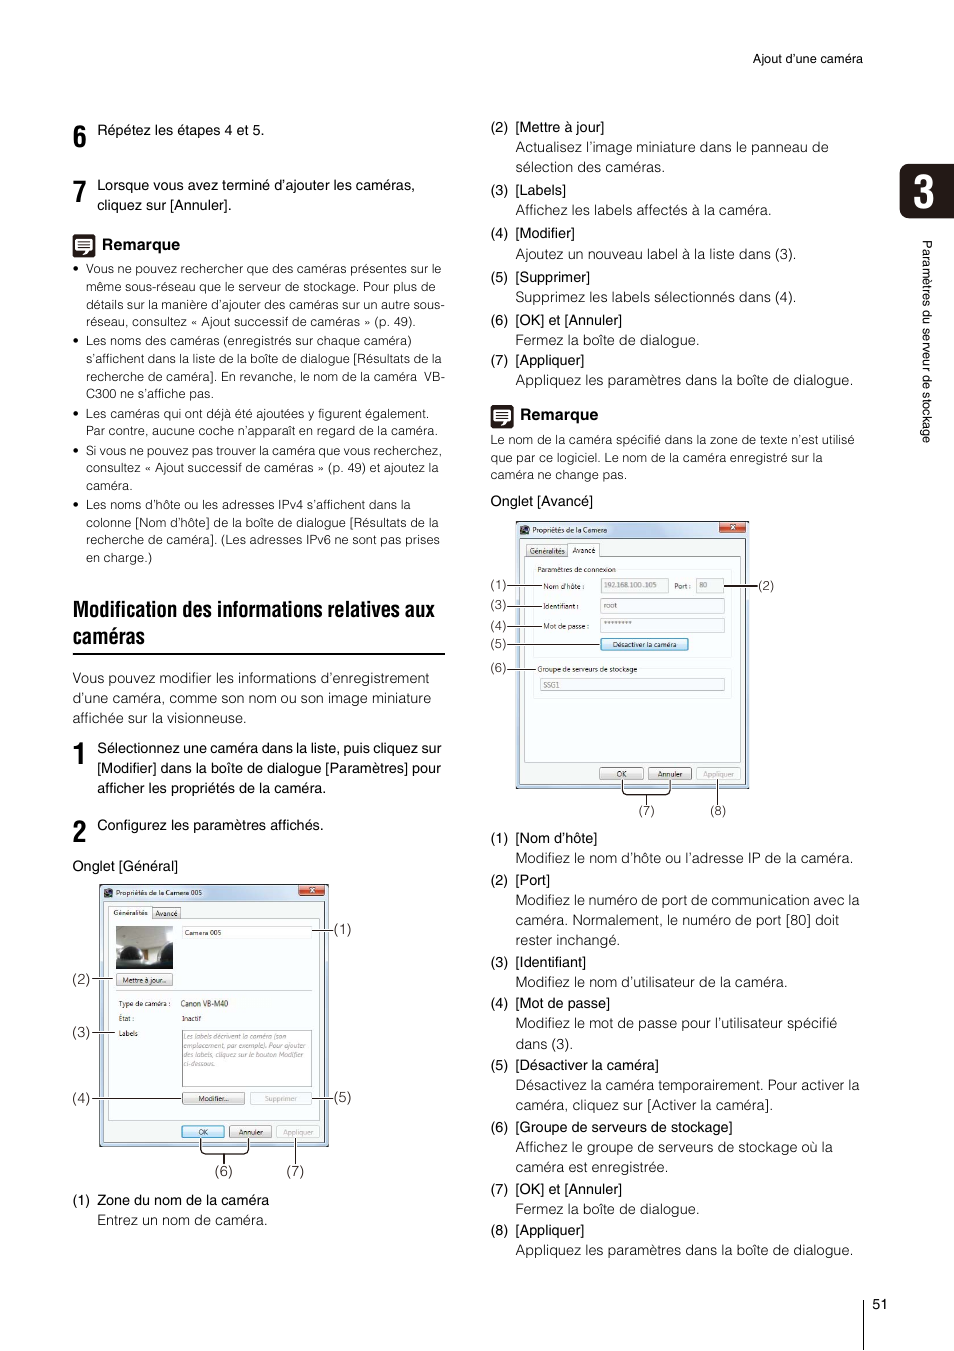 Modification des informations relatives aux, Caméras » (p. 51) | Canon VB-H610D Manuel d'utilisation | Page 51 / 138